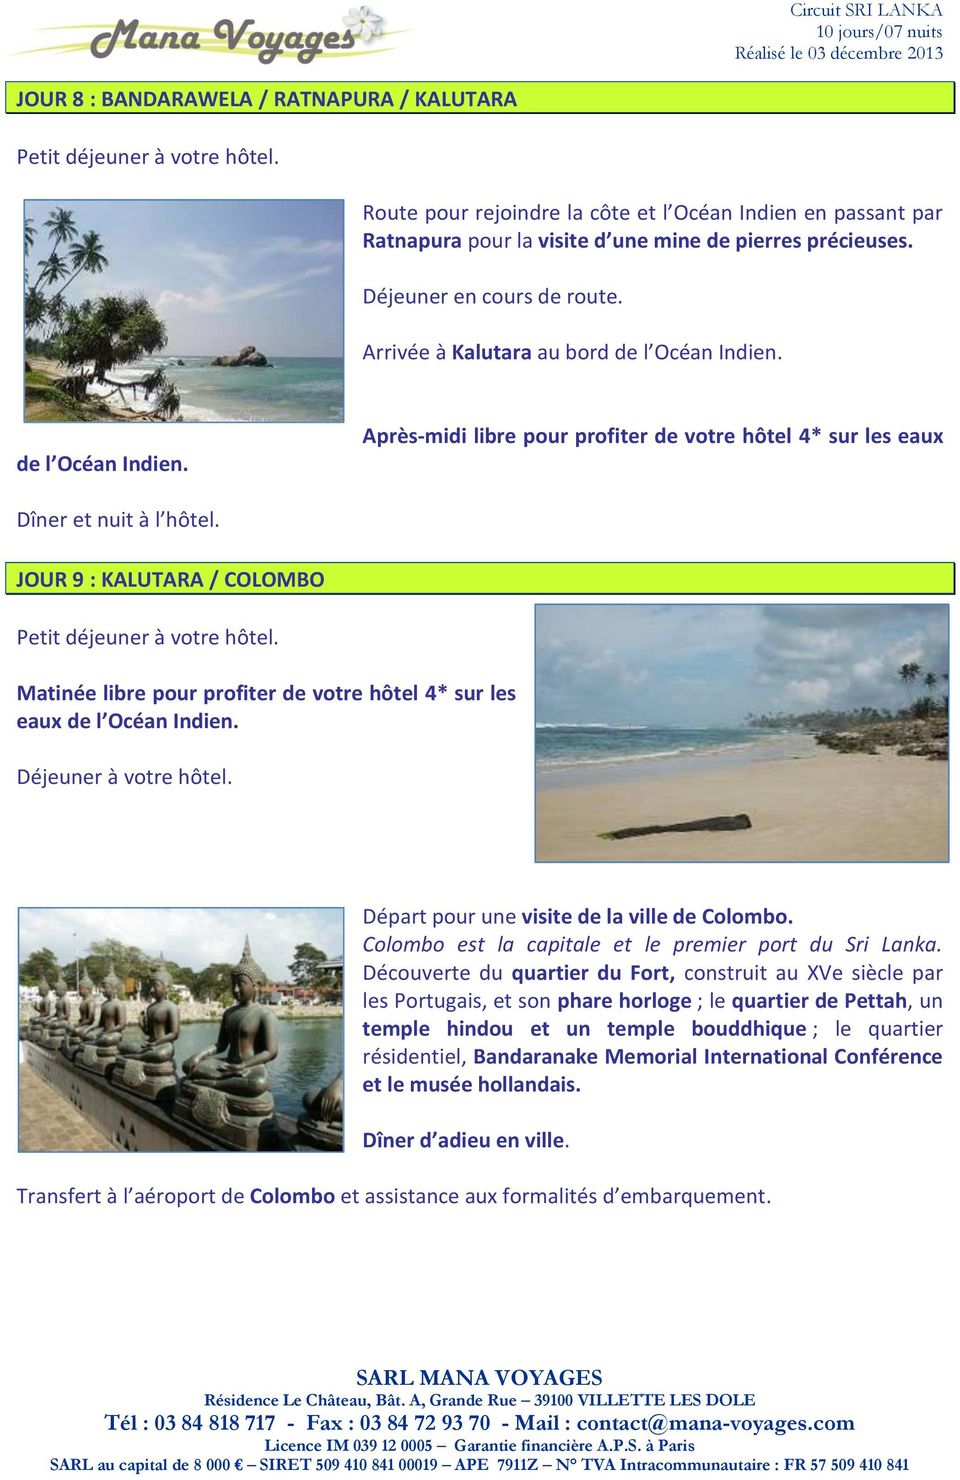 JOUR 9 : KALUTARA / COLOMBO Matinée libre pour profiter de votre hôtel 4* sur les eaux de l Océan Indien. Déjeuner à votre hôtel. Départ pour une visite de la ville de Colombo.